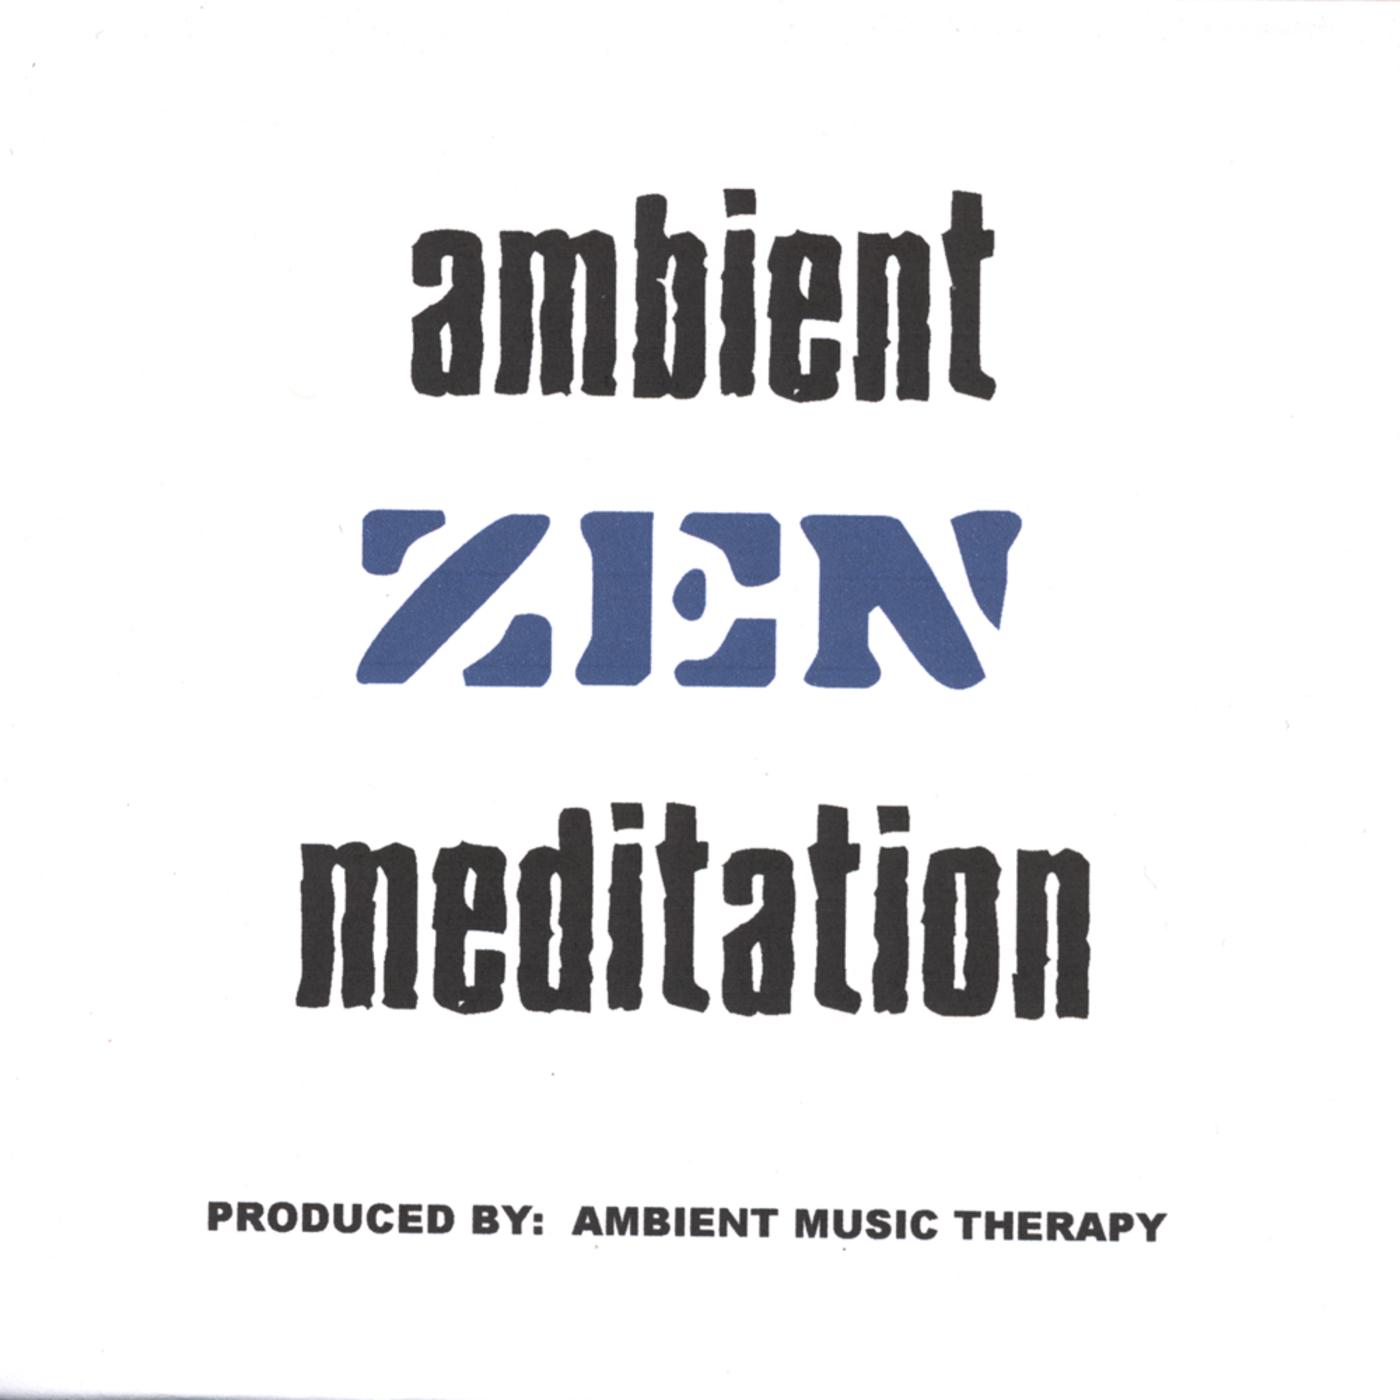 Ambient Zen Meditation 2 - ZEN 2